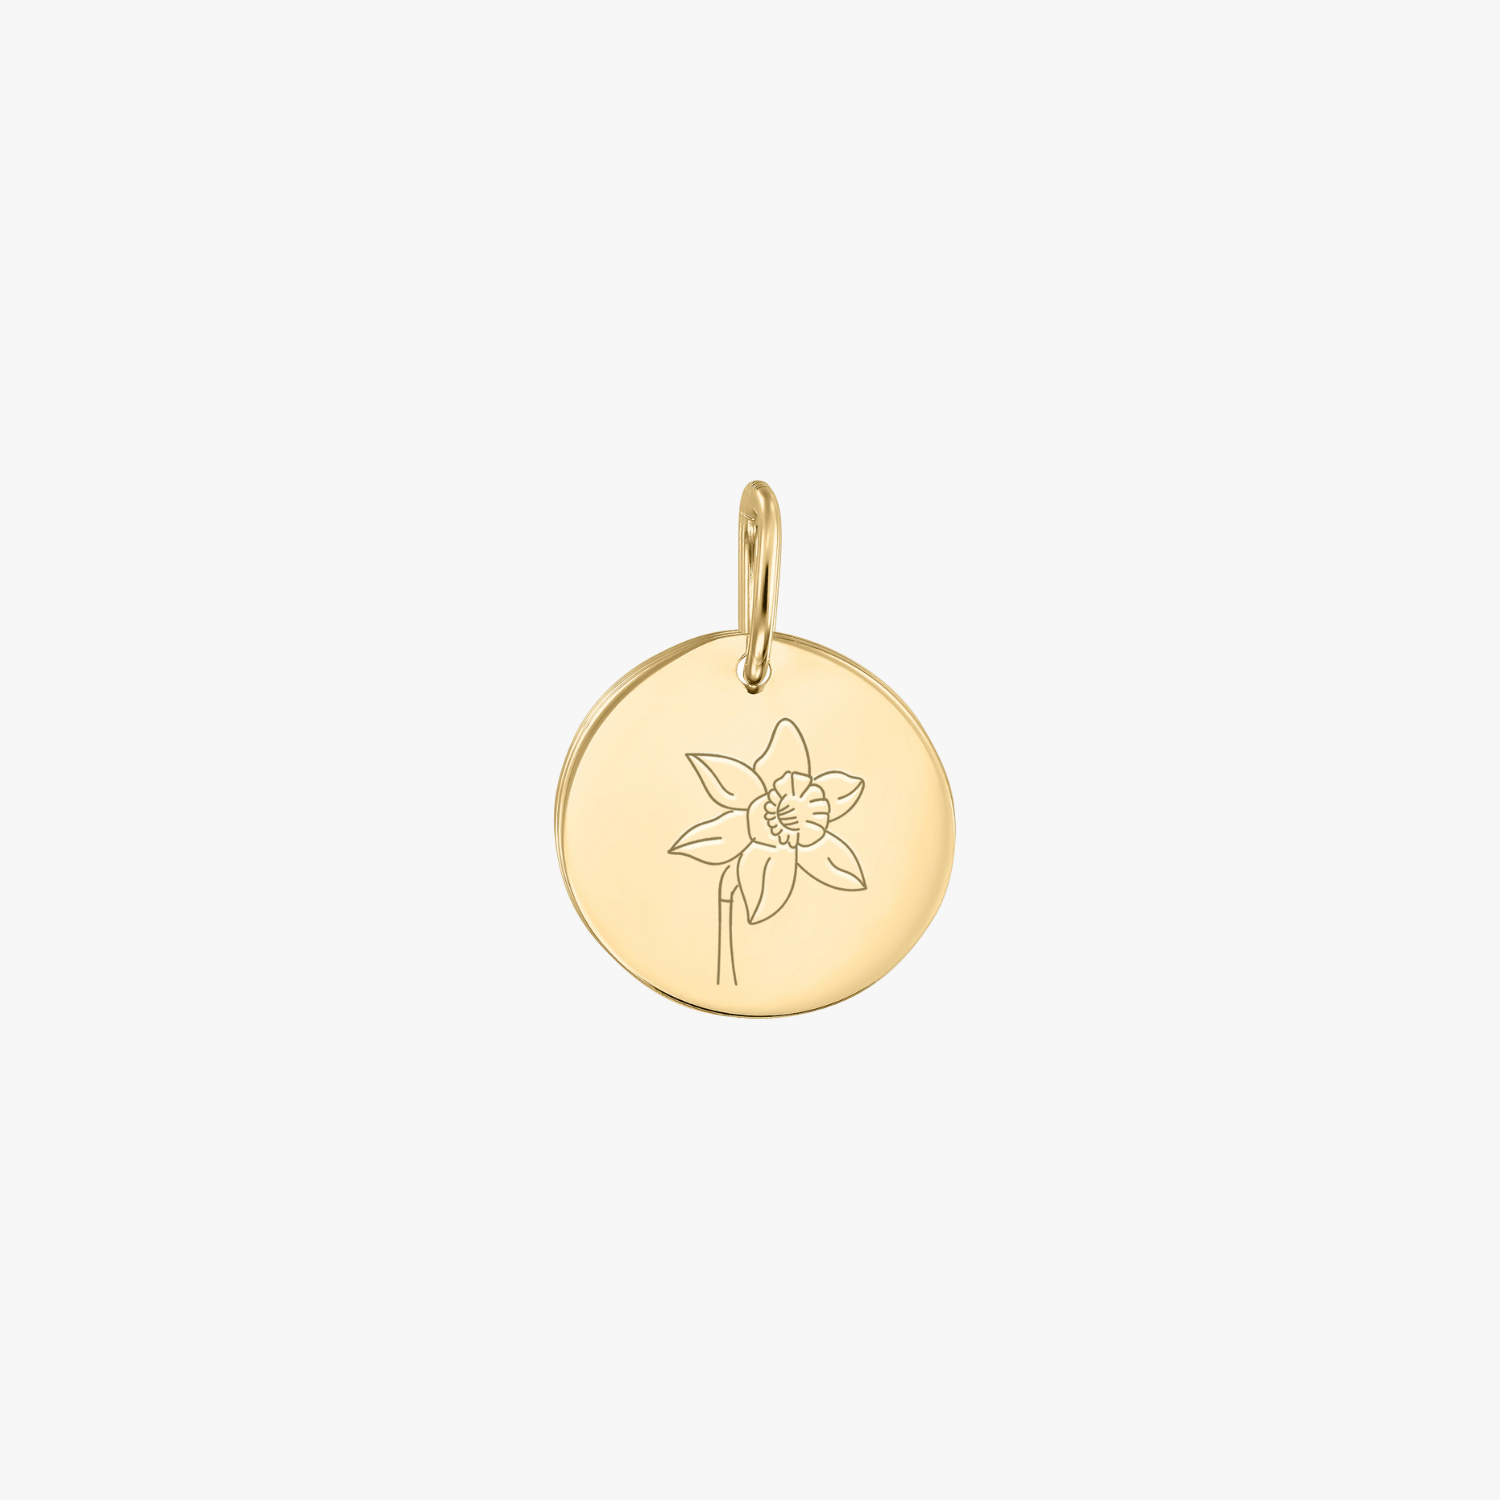 Birth Flower - March Daffodil gold pendant